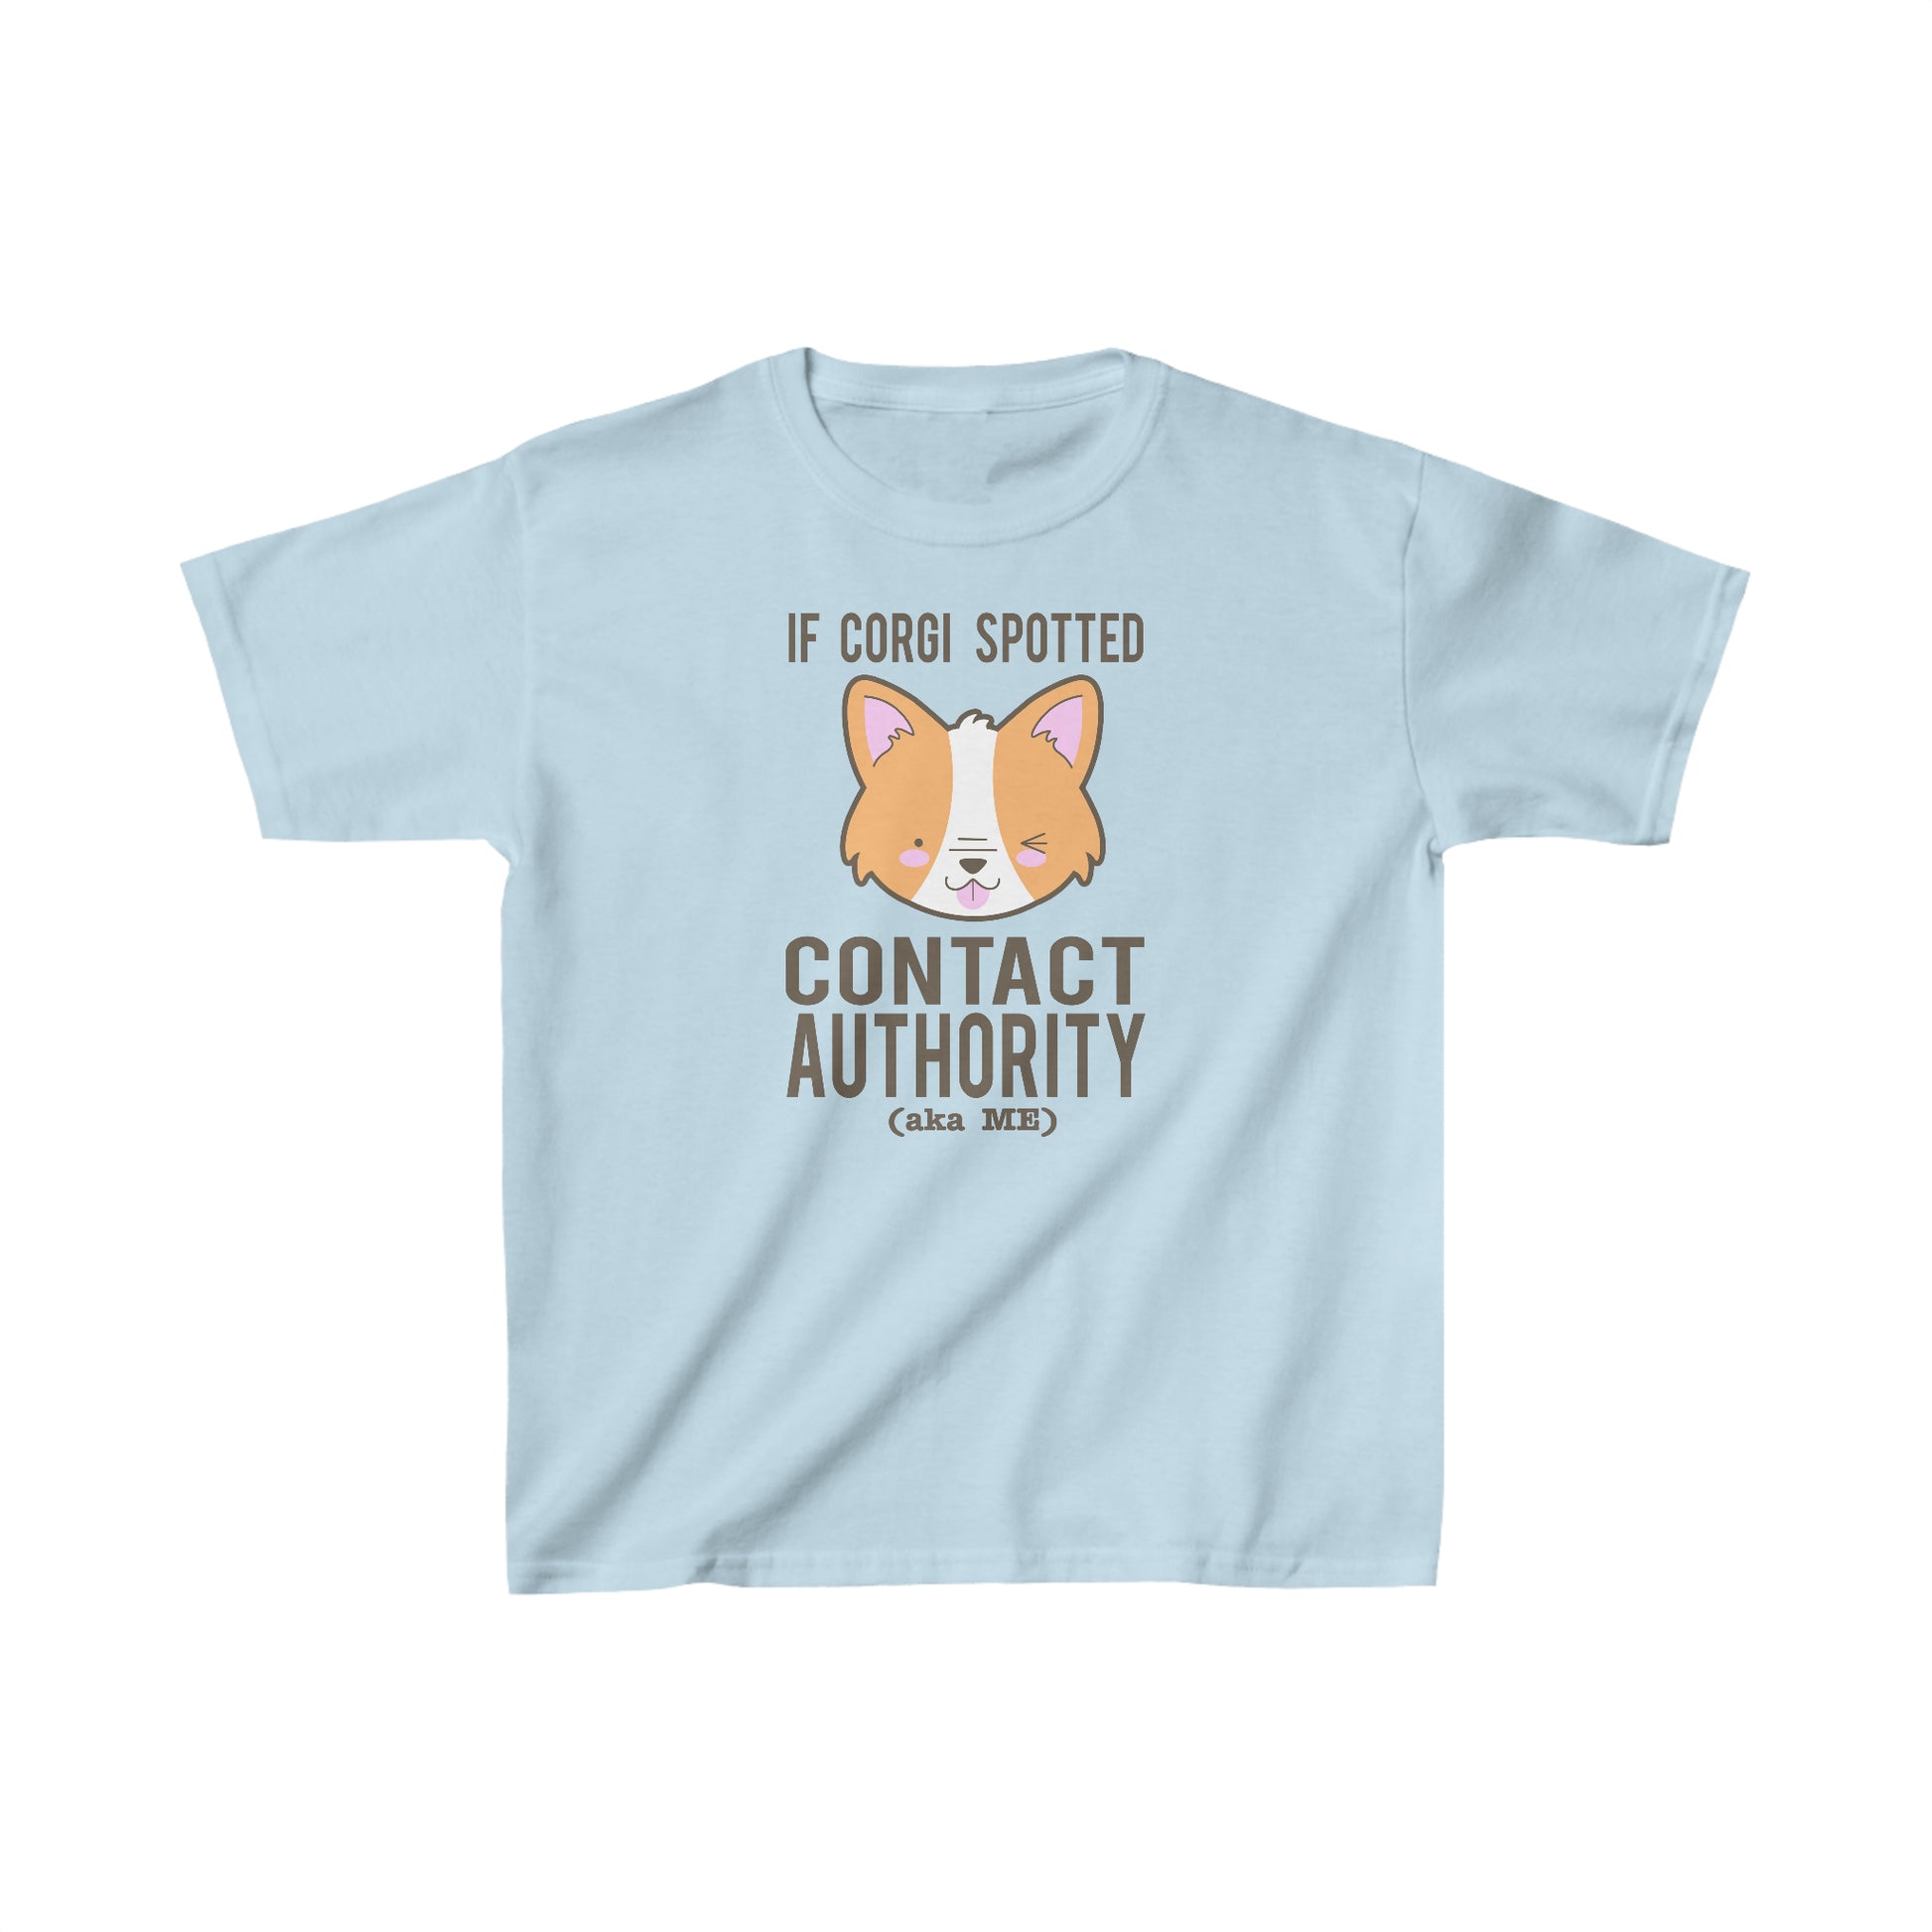 light blue Kid Pembroke Corgi t-shirt child short sleeve shirt copy